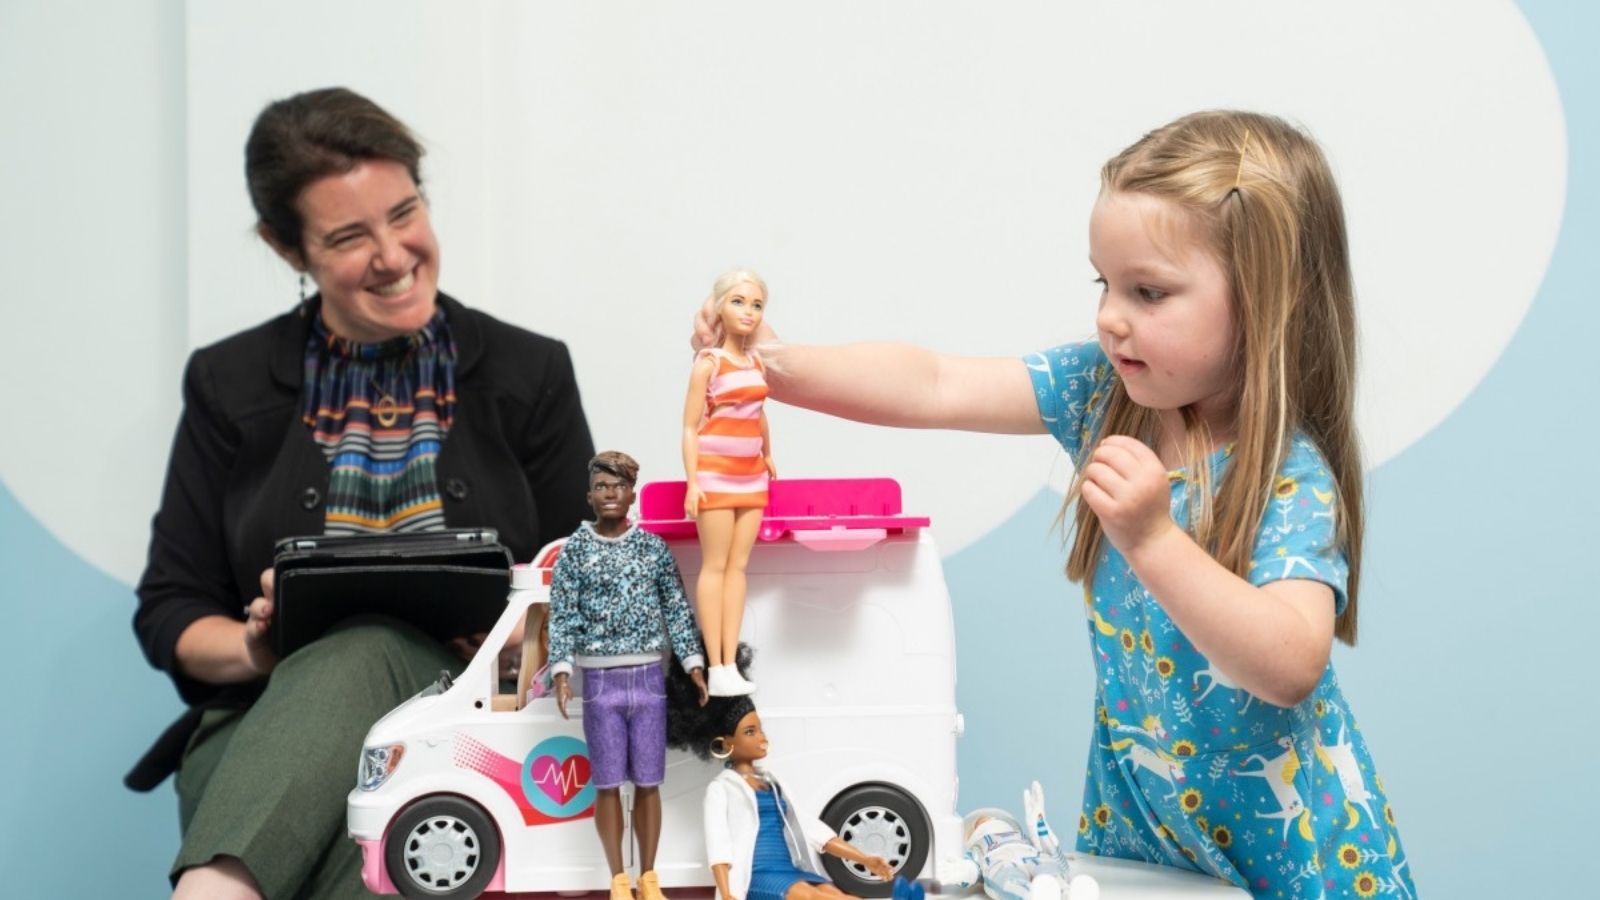 Jak zabawa lalkami może rozwinąć inteligencję emocjonalną? Mattel mediarun mattel badania